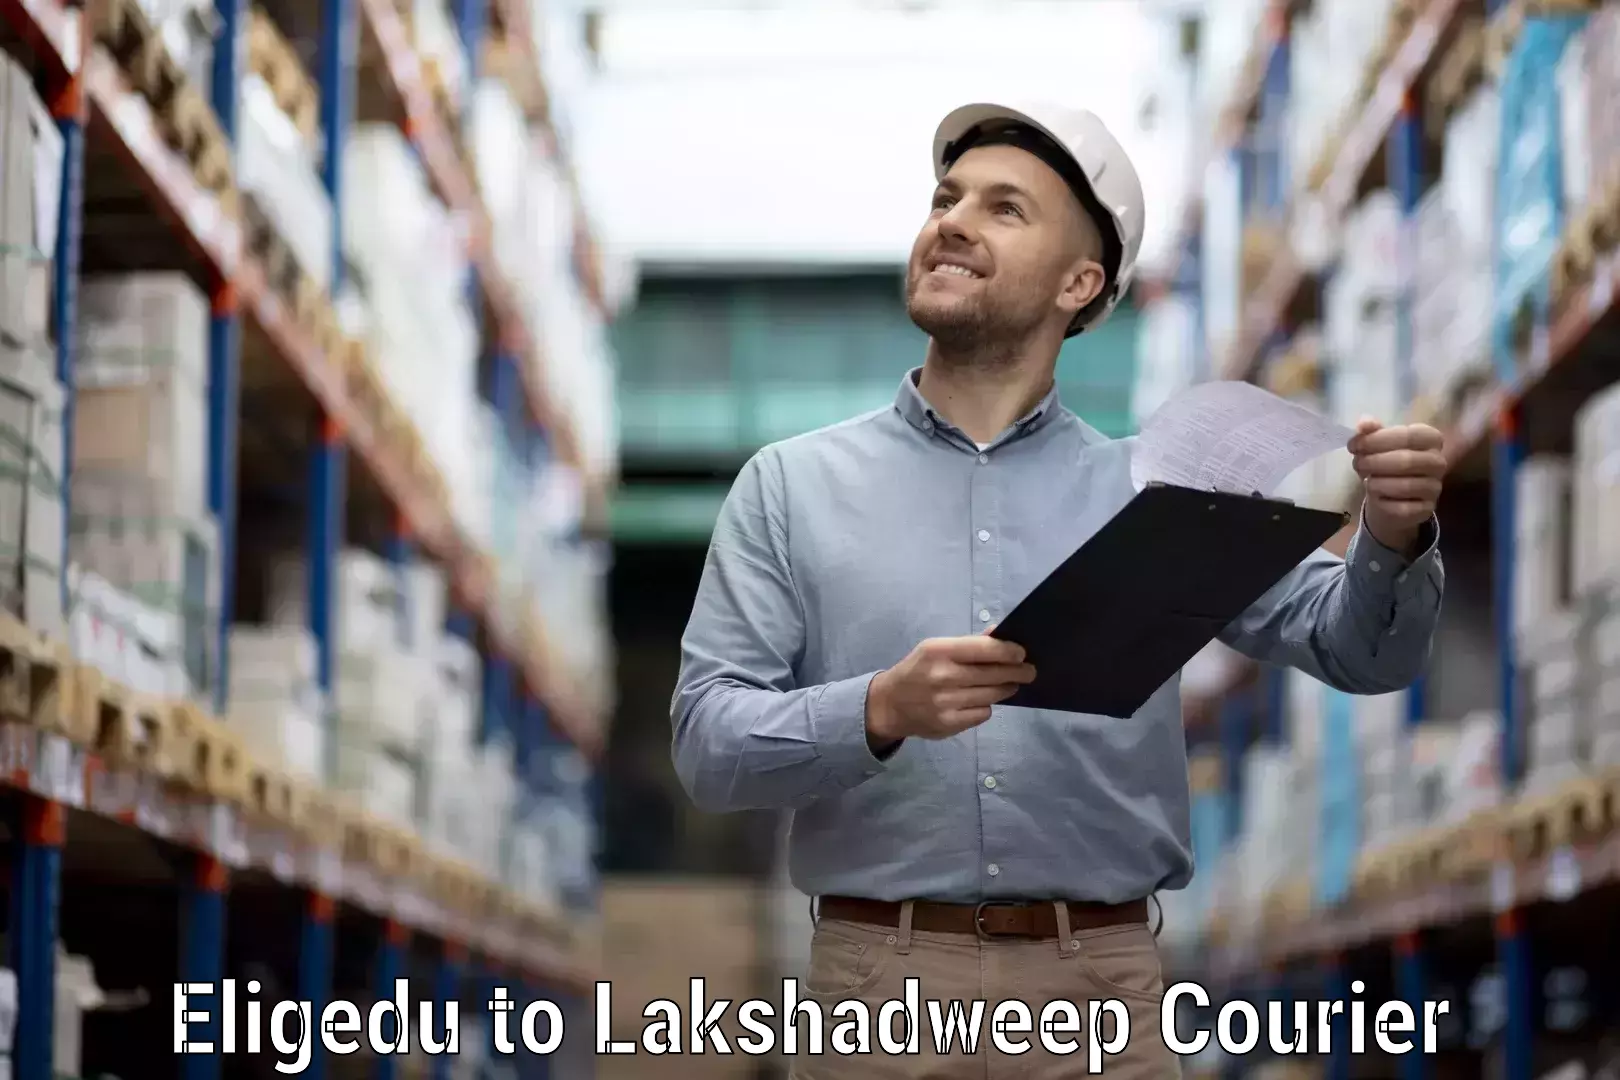 Customer-focused courier Eligedu to Lakshadweep